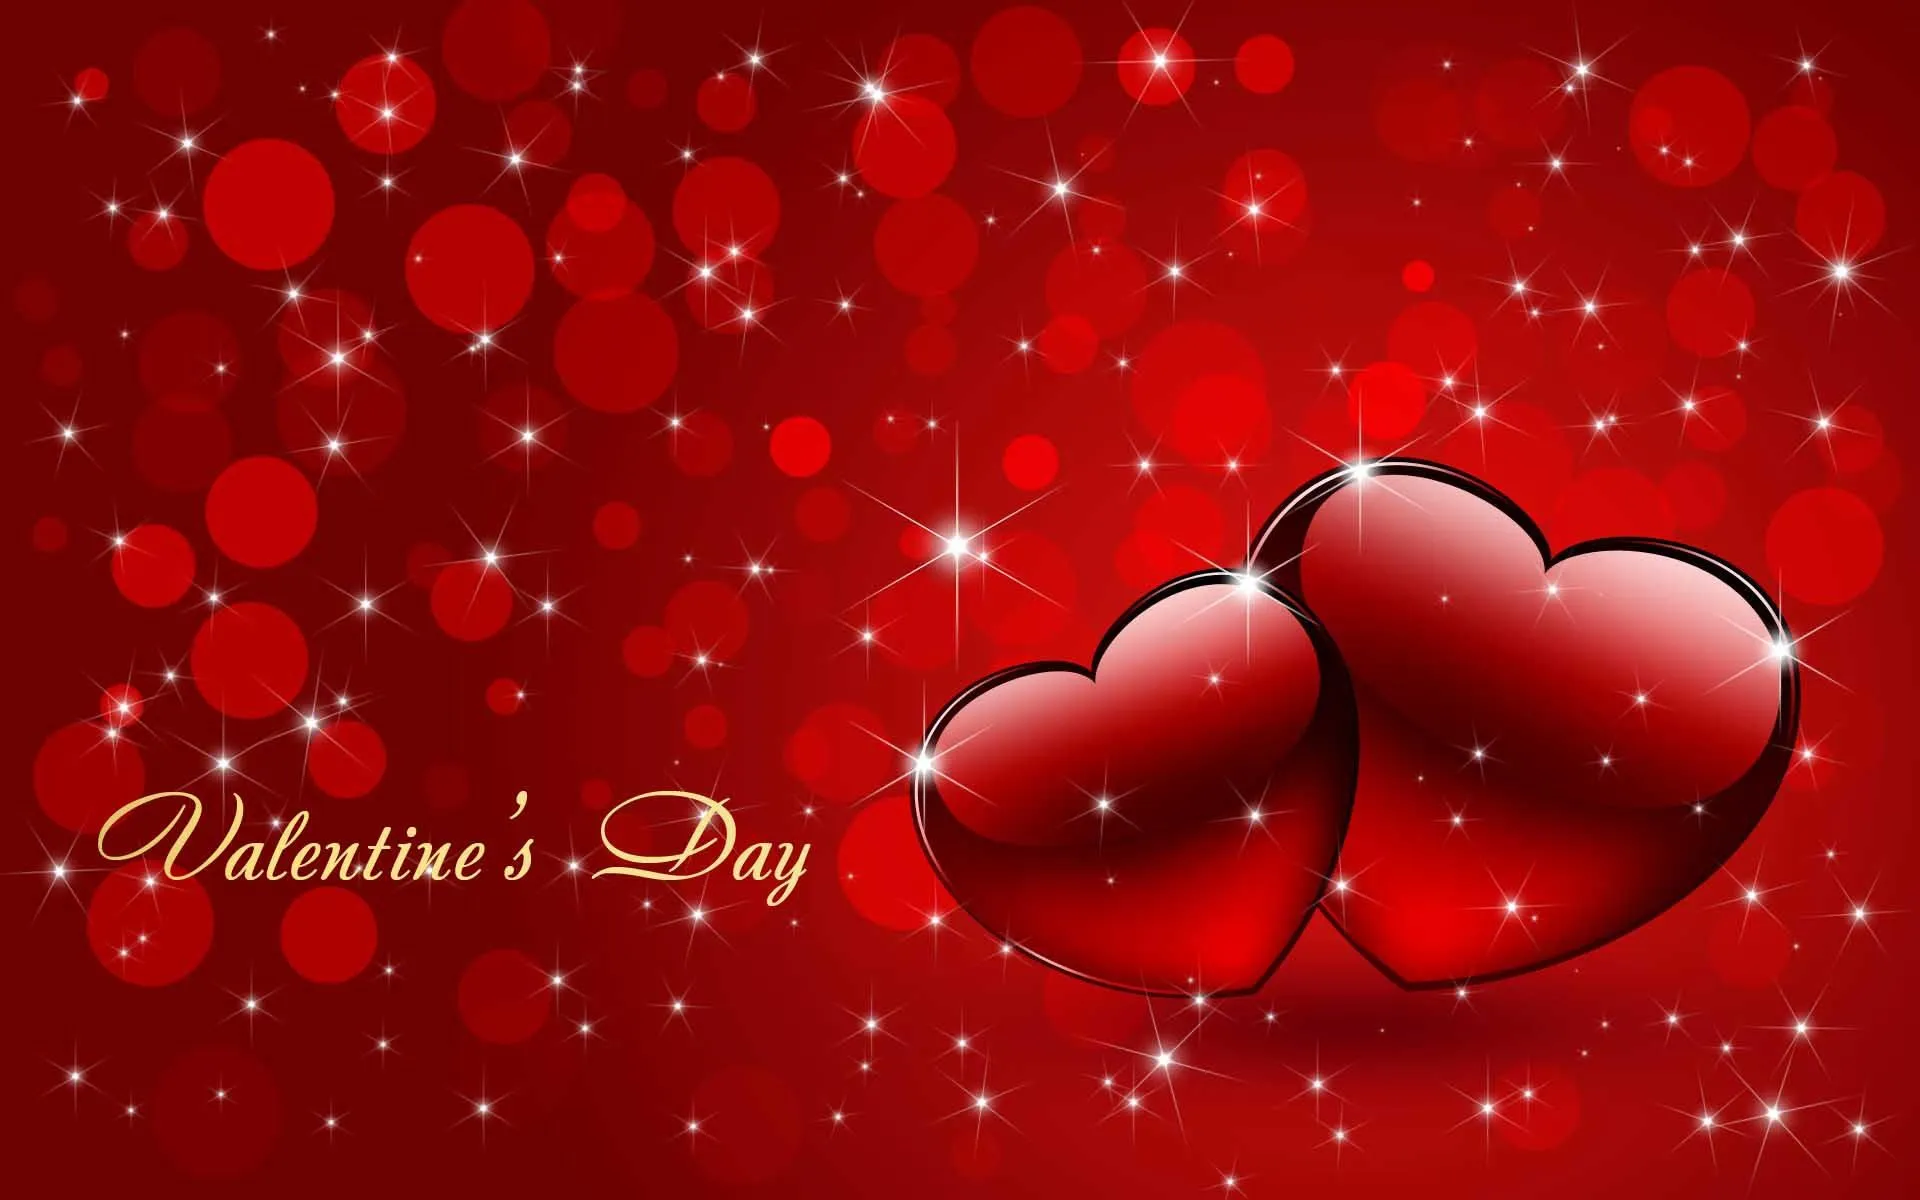 Muchas imagenes Geniales de San Valentin Dia Enamorados | Imagenes ...